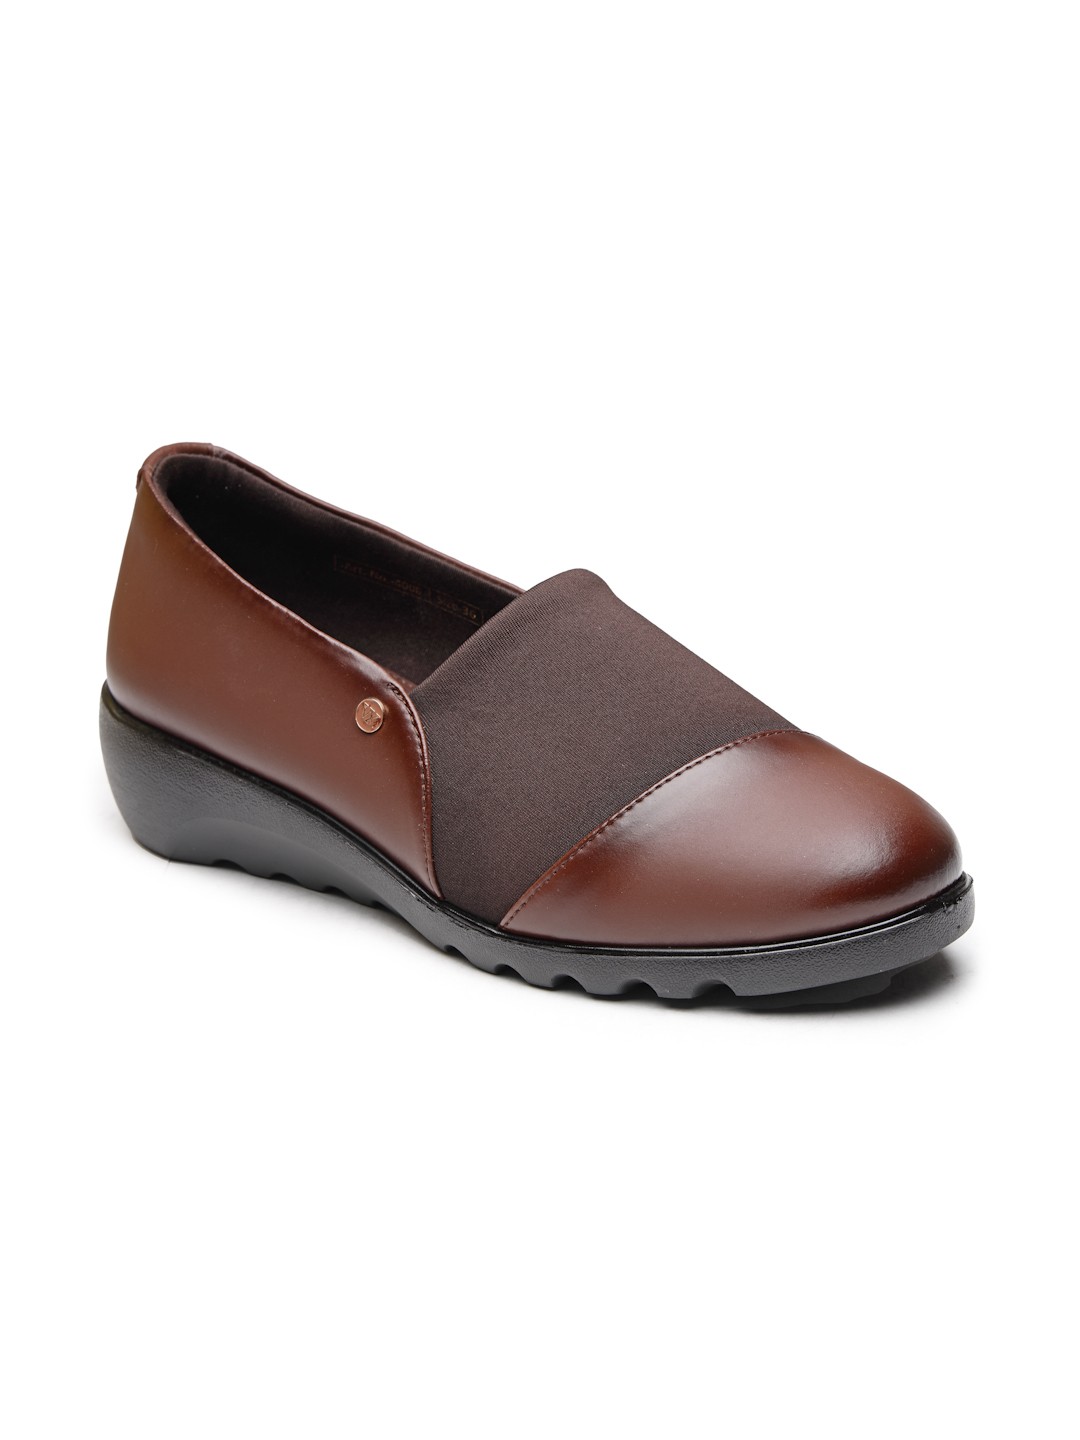 Buy Von Wellx Germany Comfort Women's Brown Casual Shoes Ayla Online in Vadodara